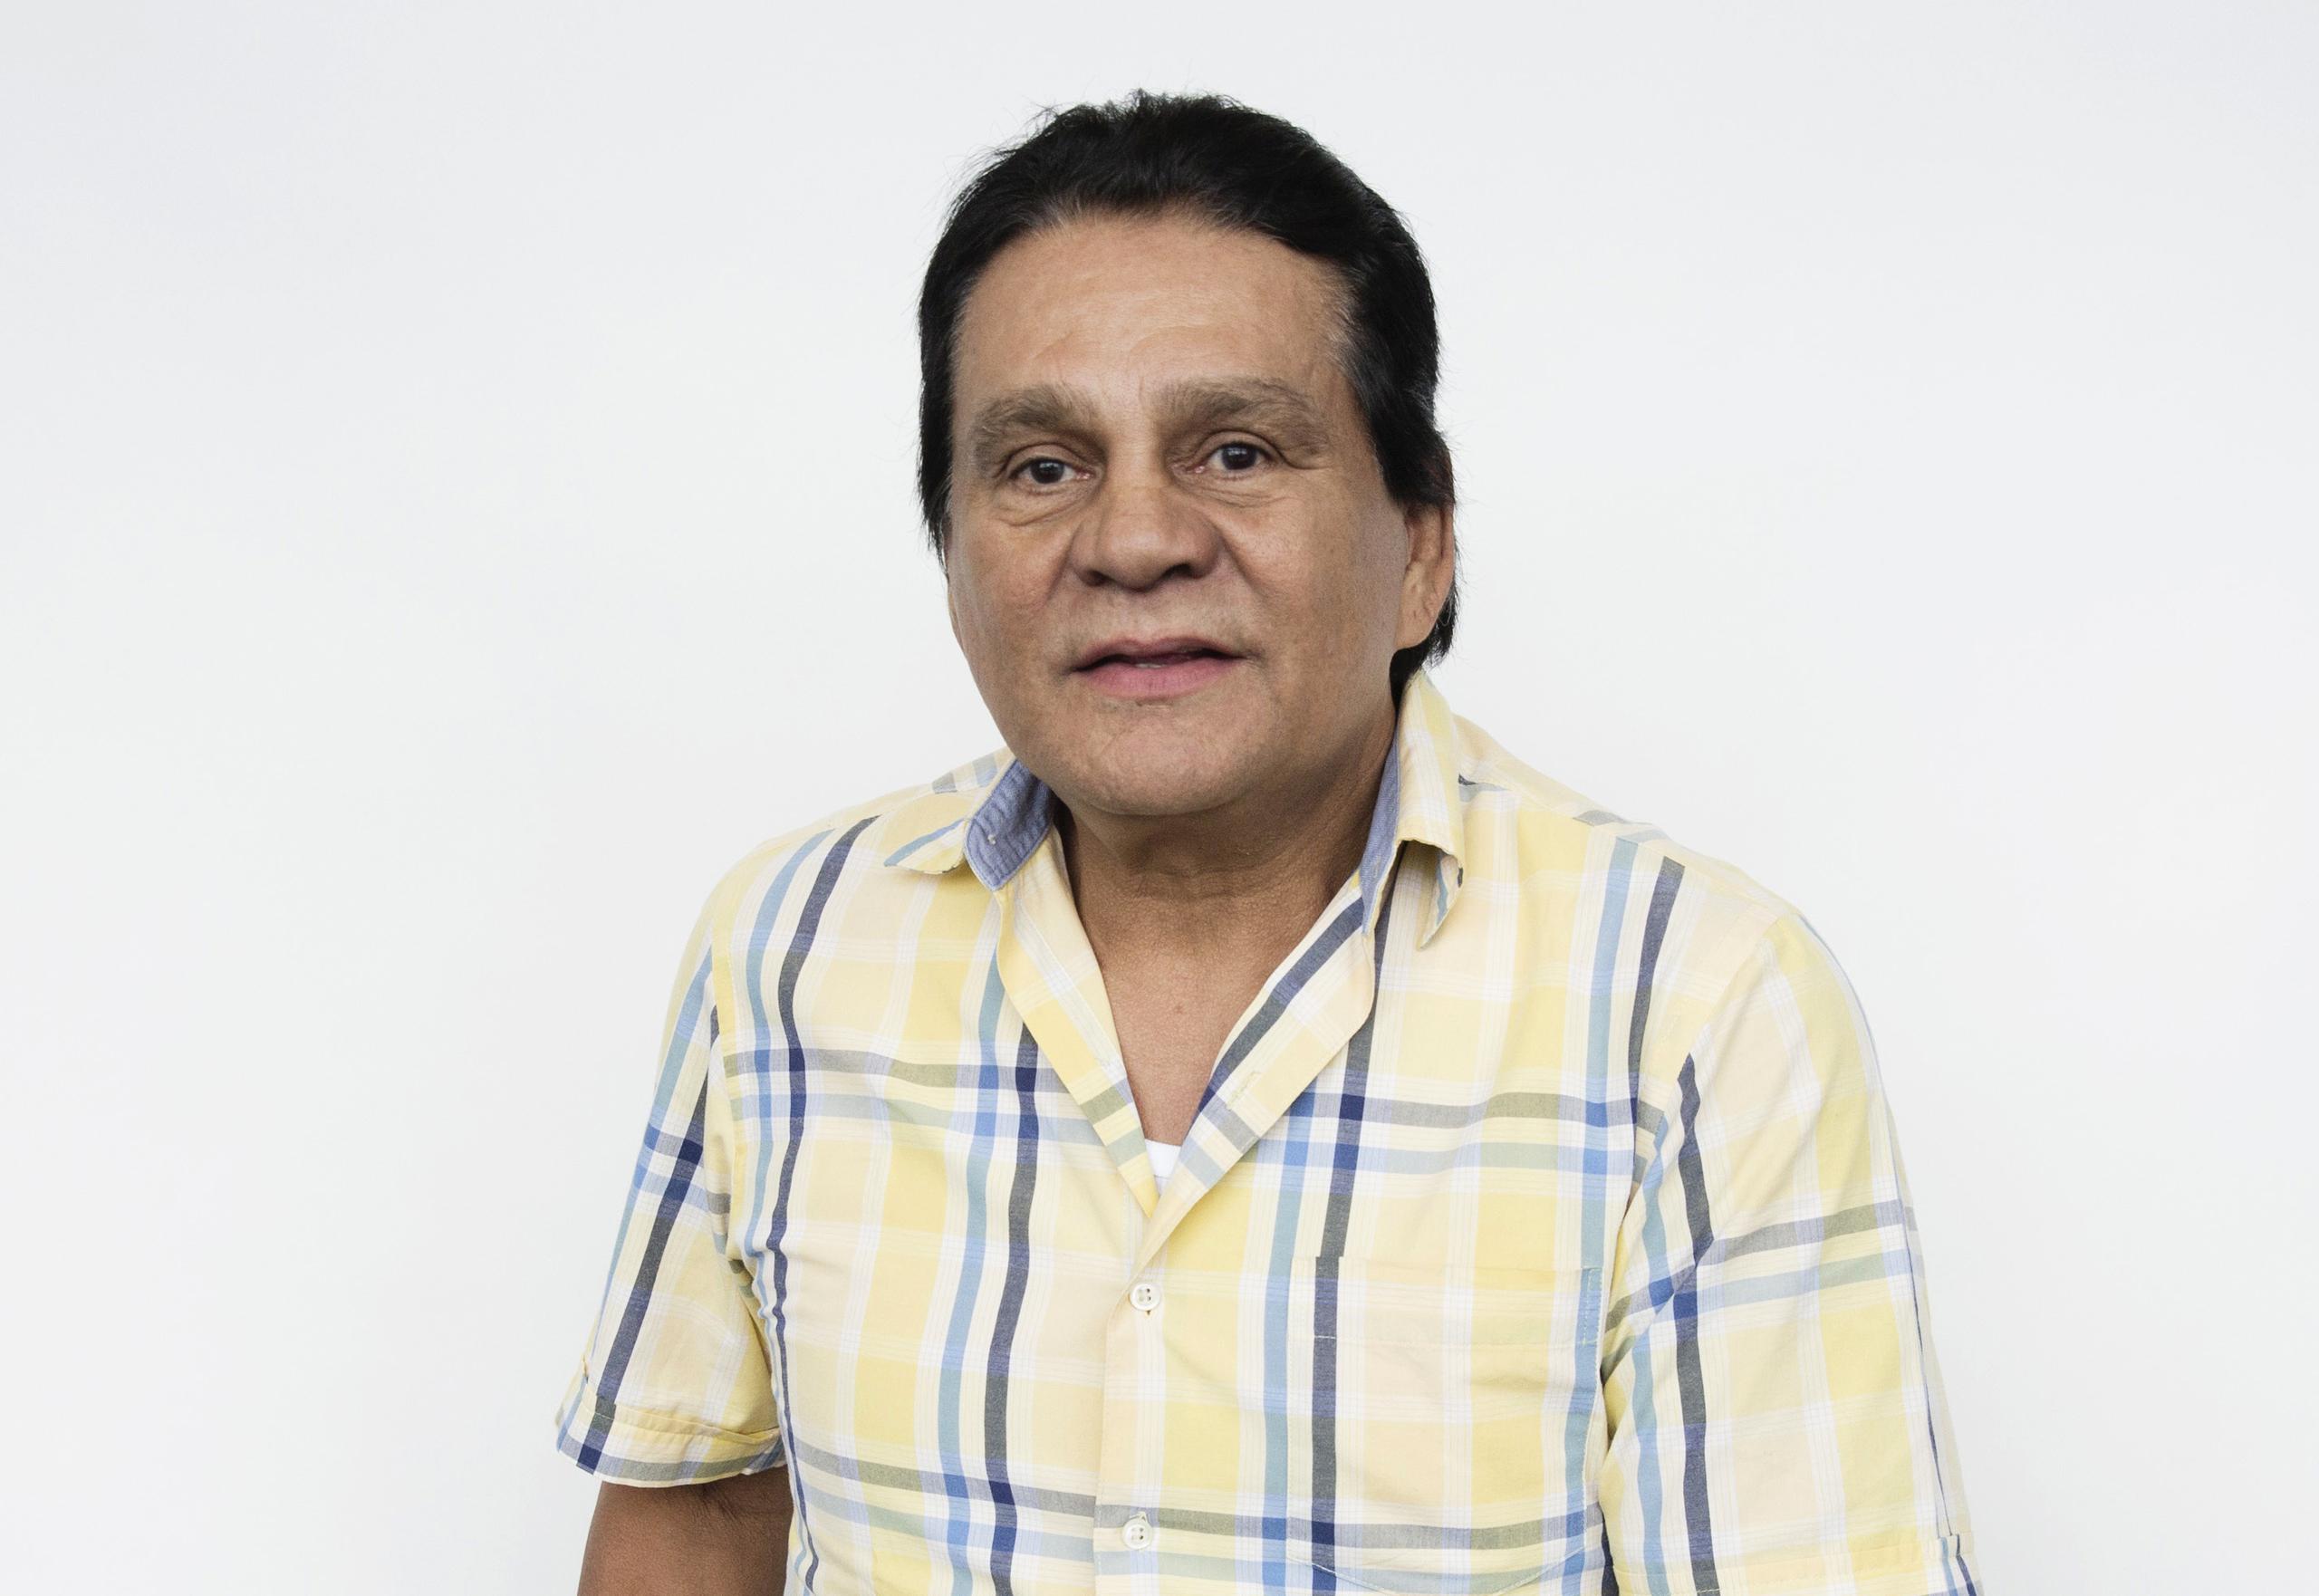 El exboxeador panameño Roberto "Manos de Piedra" Durán deberá permanecer en aislamiento domiciliario.